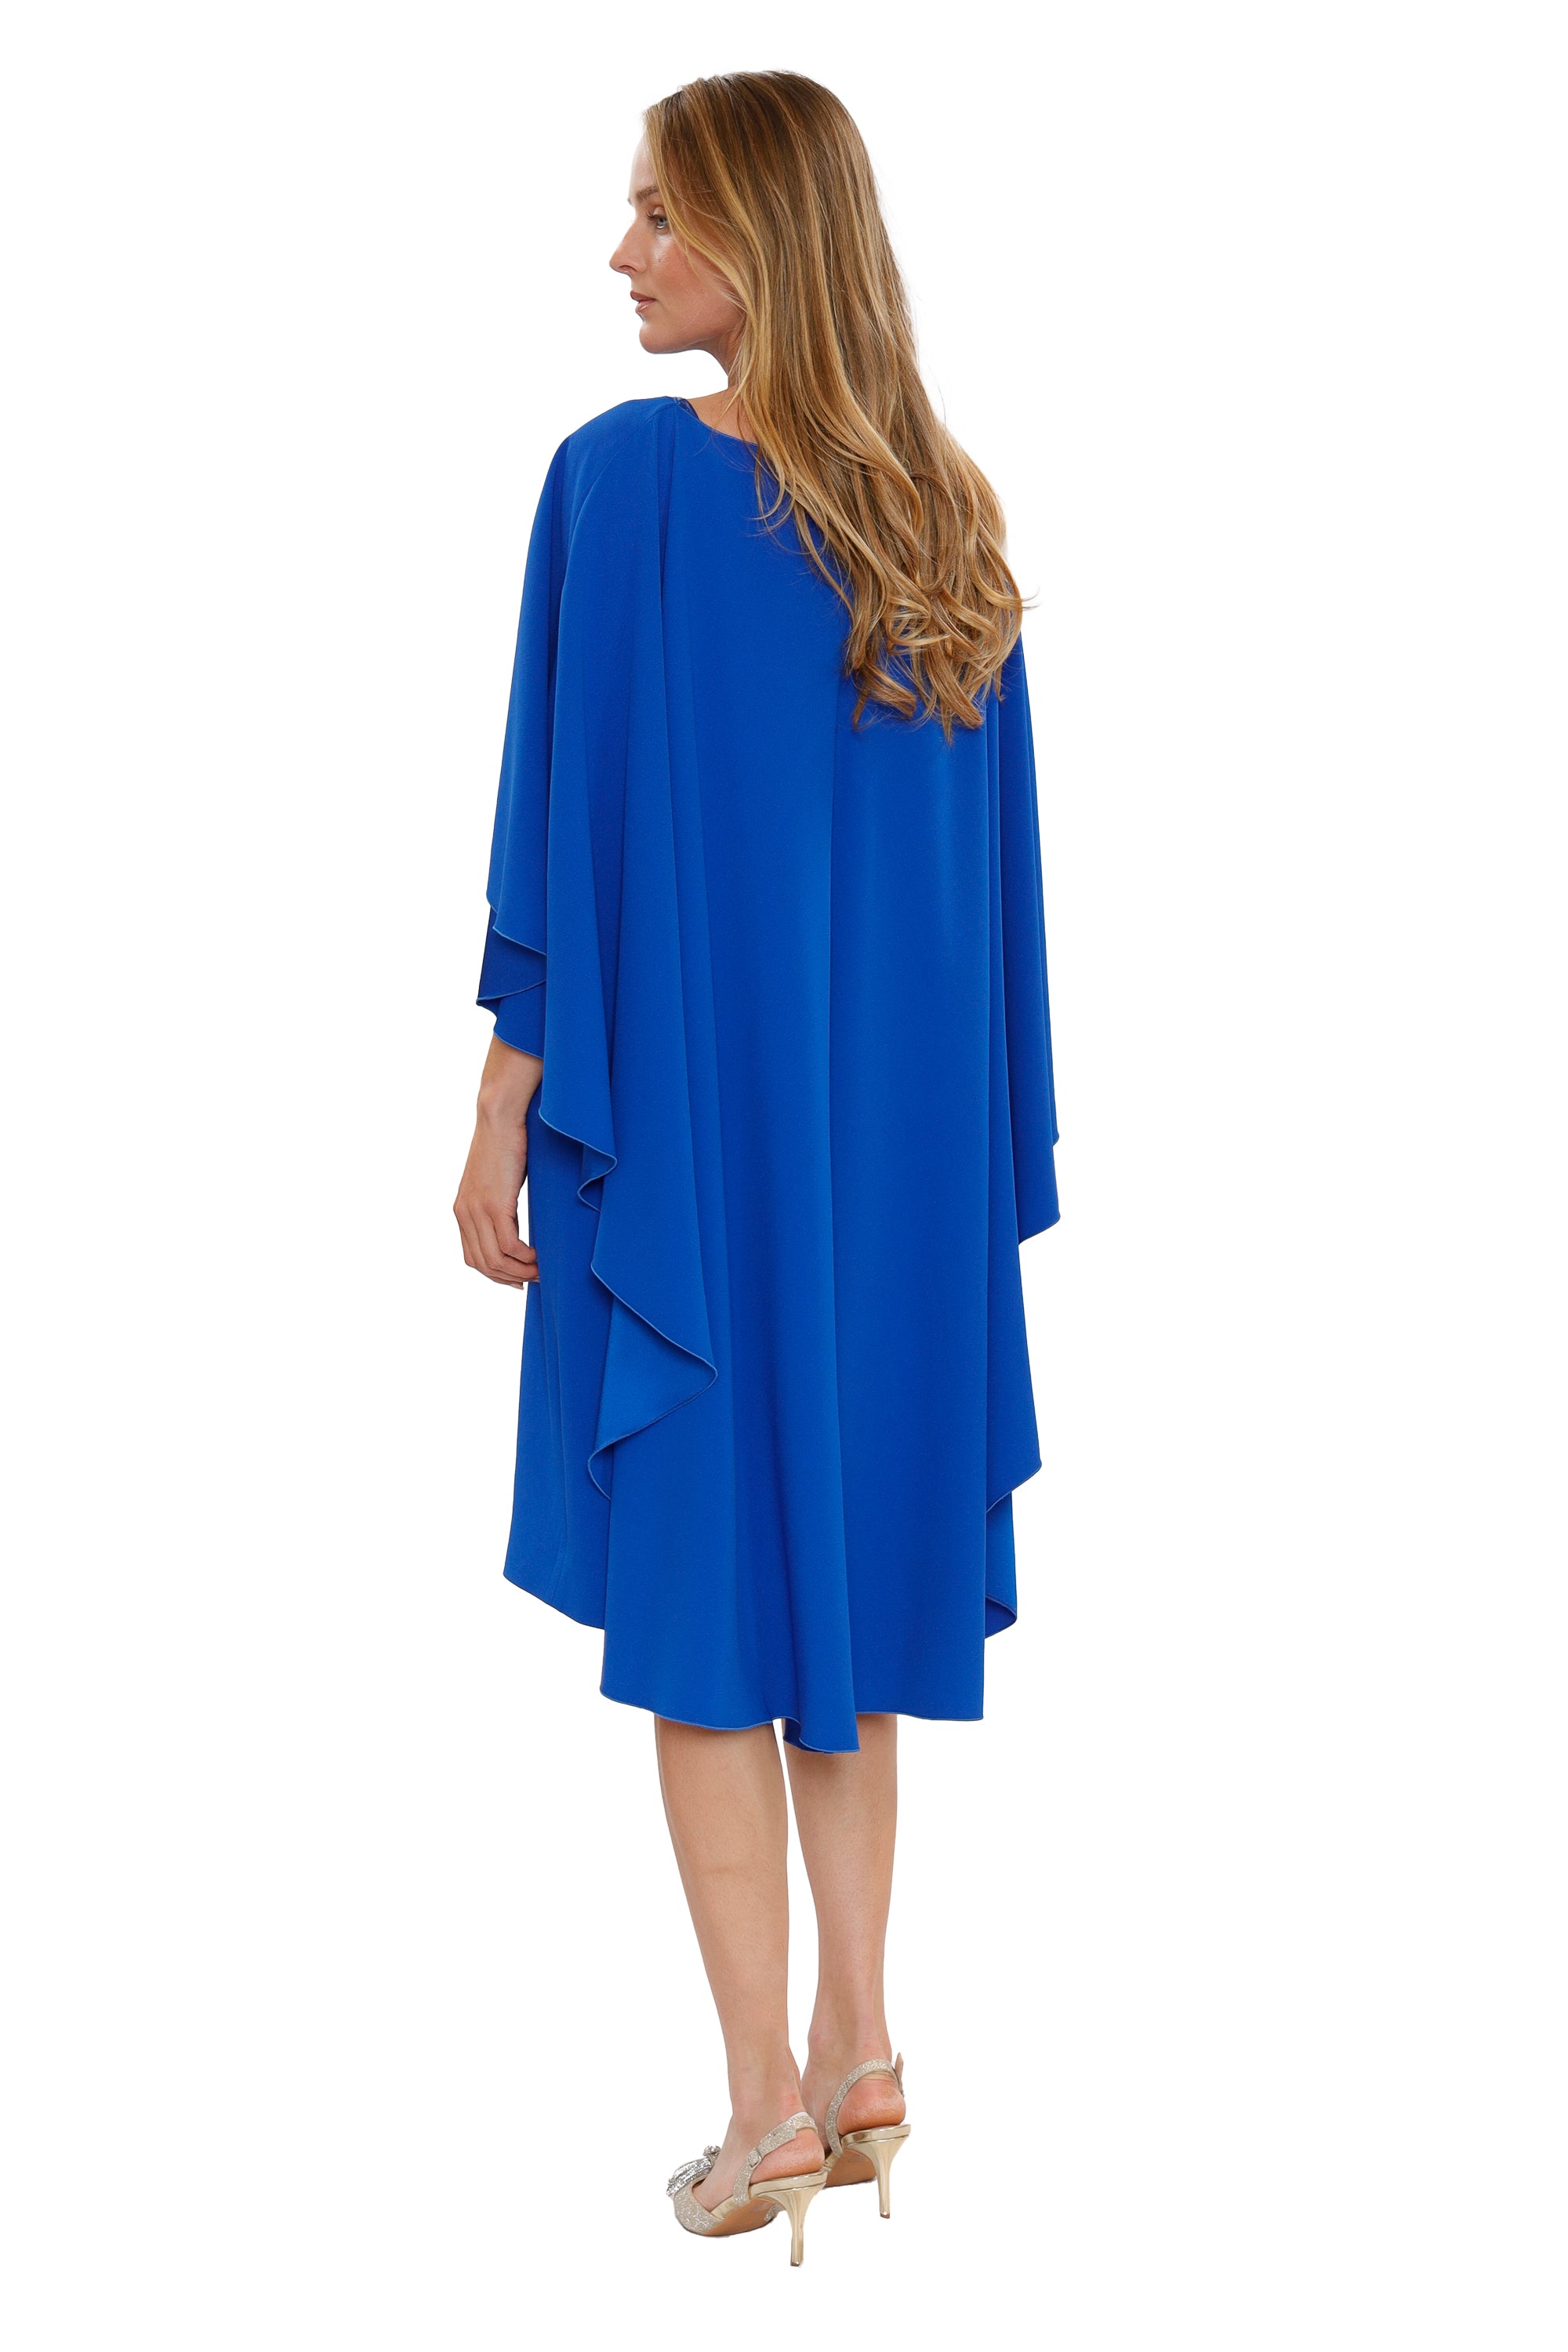 Vestido Azul - Alberta Ferretti